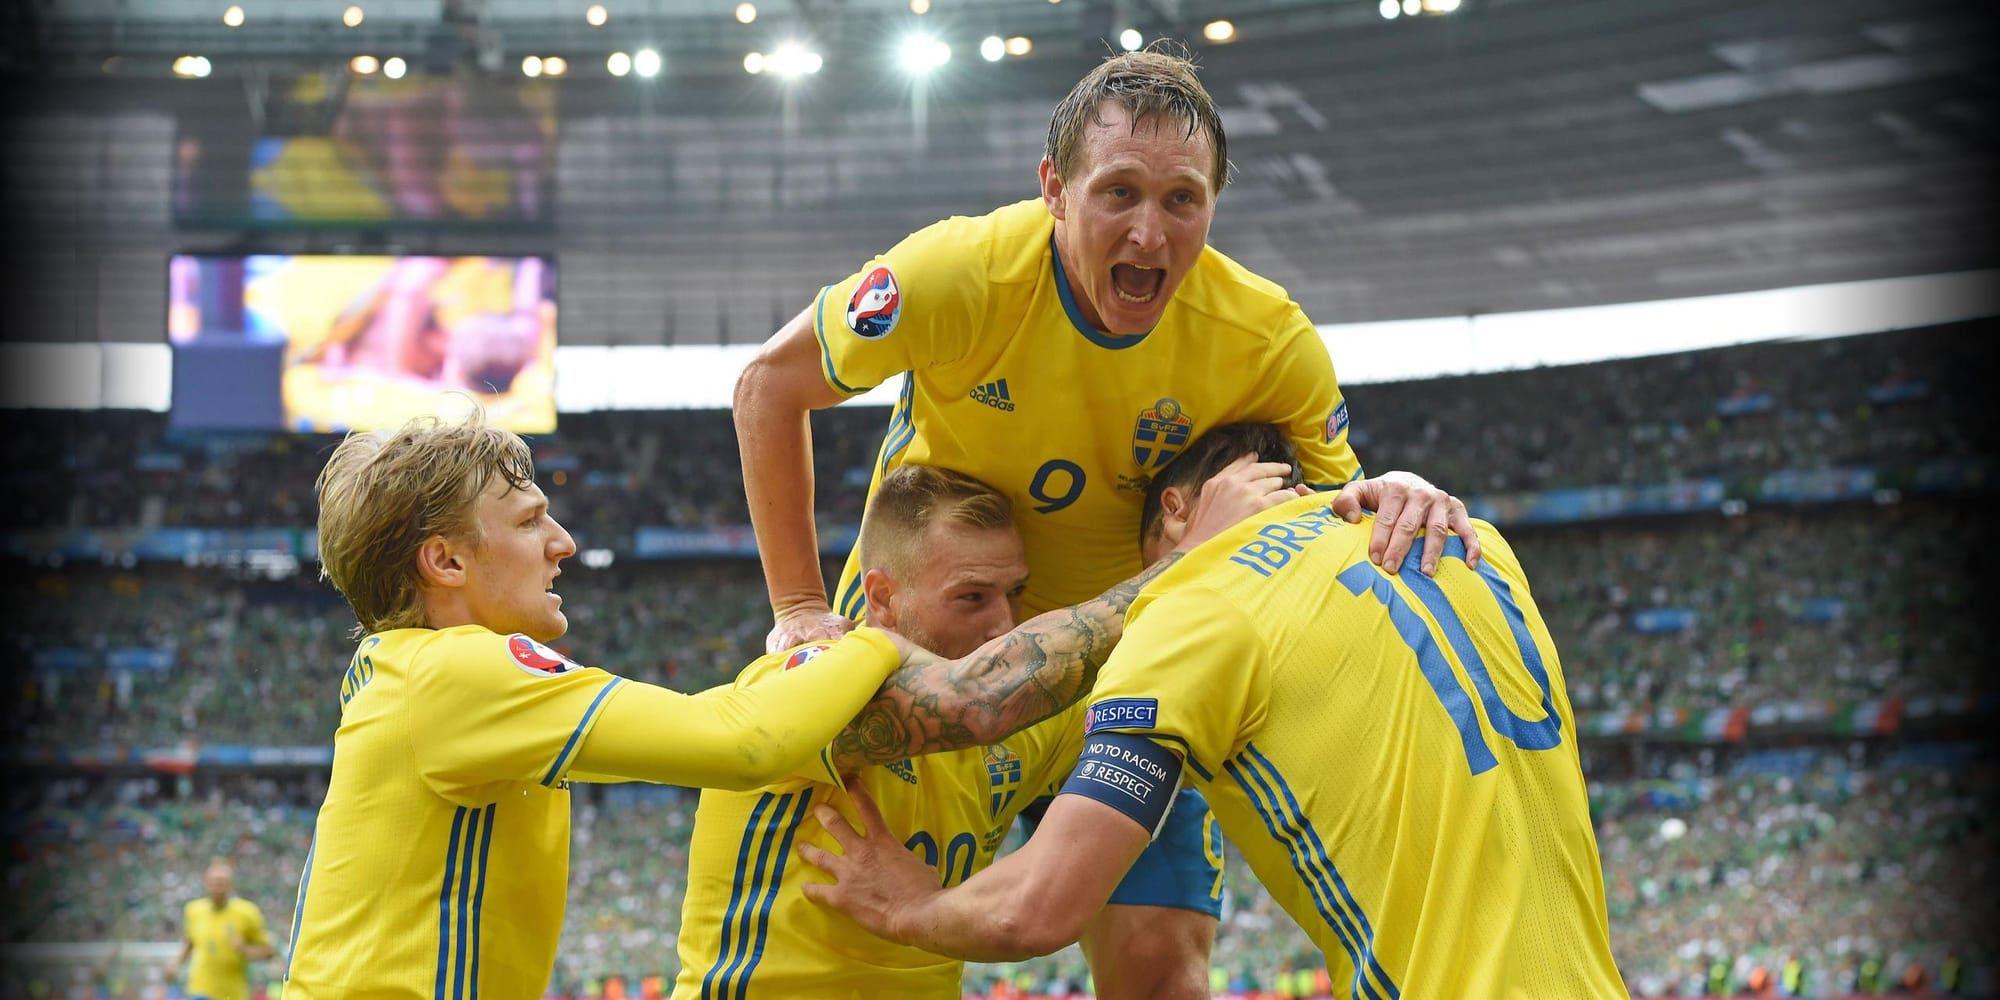 Om Sverige skräller mot Belgien kan laget få en drömväg till EM-finalen i Paris.